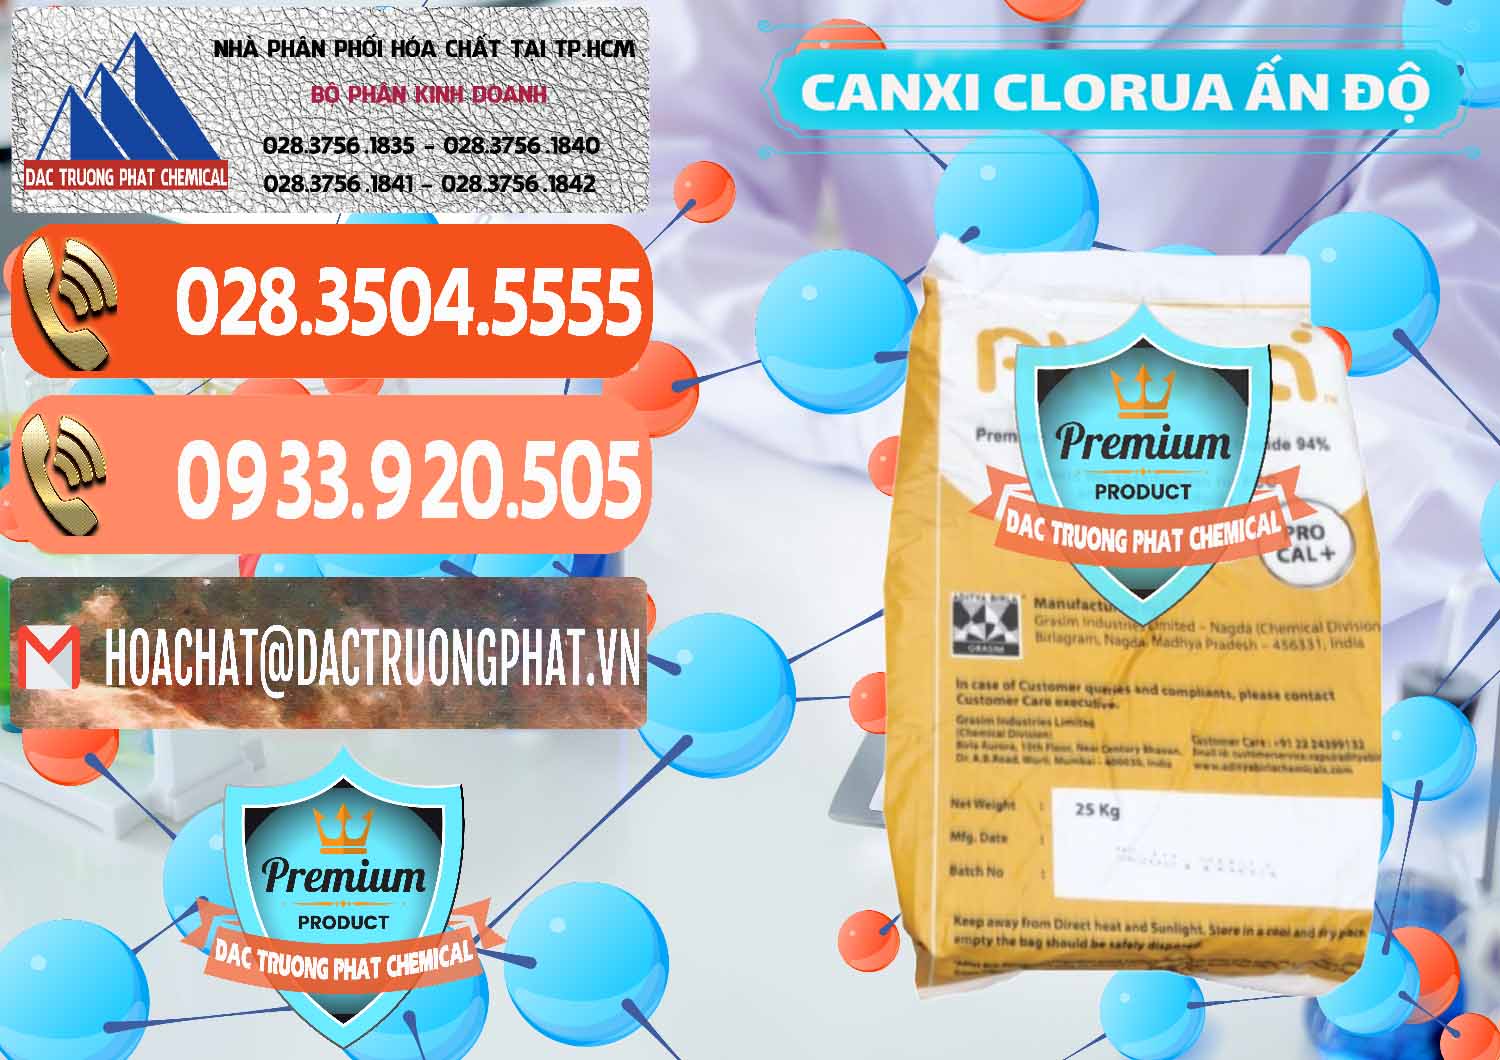 Chuyên bán _ phân phối CaCl2 – Canxi Clorua Food Grade Altura Aditya Birla Grasim Ấn Độ India - 0436 - Cty chuyên phân phối và kinh doanh hóa chất tại TP.HCM - hoachatmientay.com